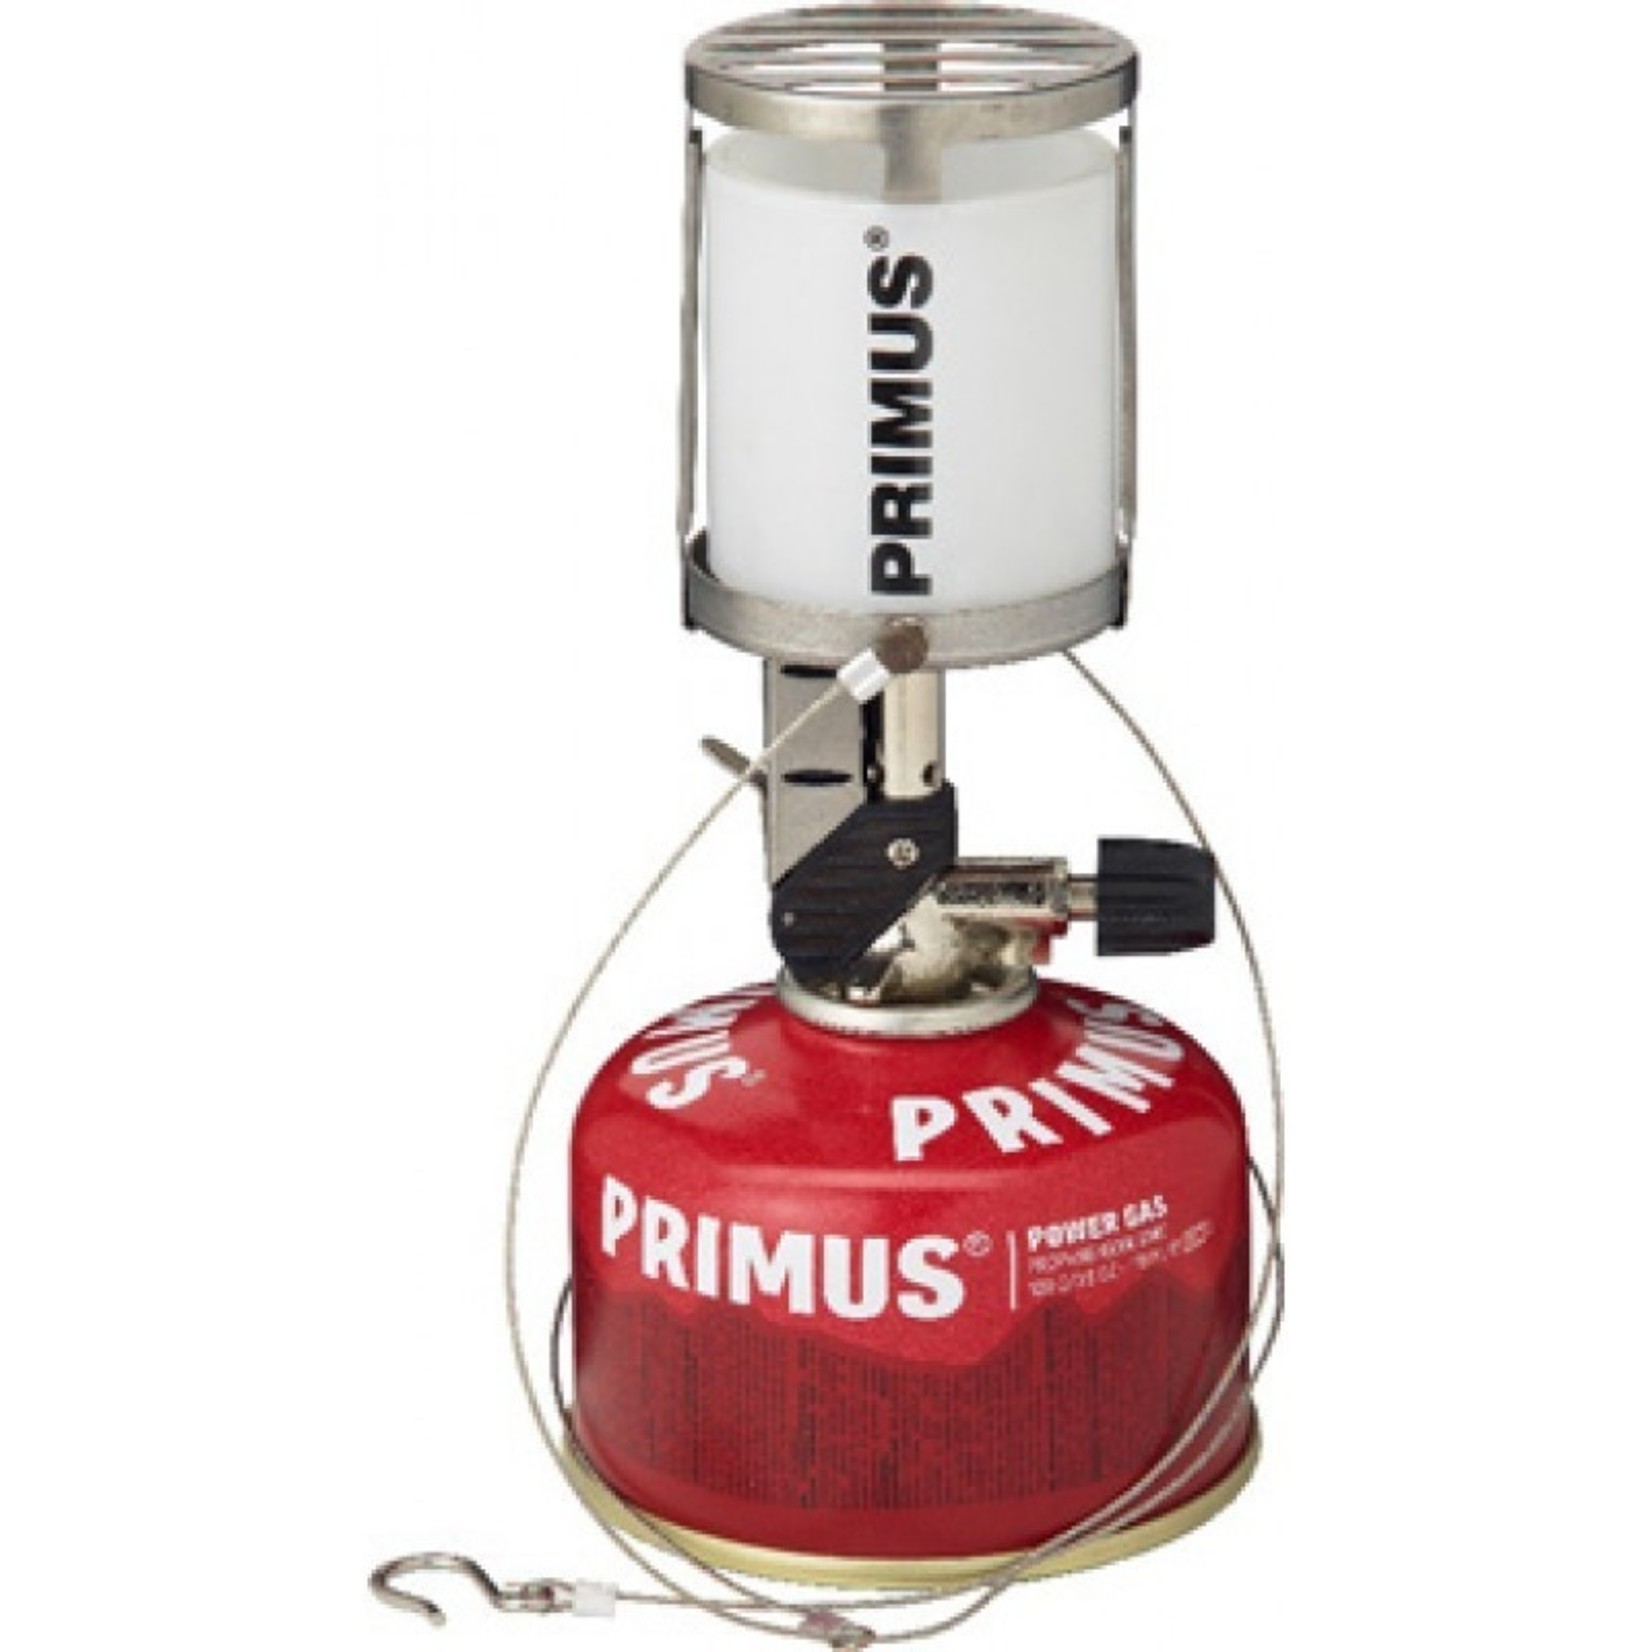 Primus Primus Micron lantaarn, glas, met EasyTrigger piezo